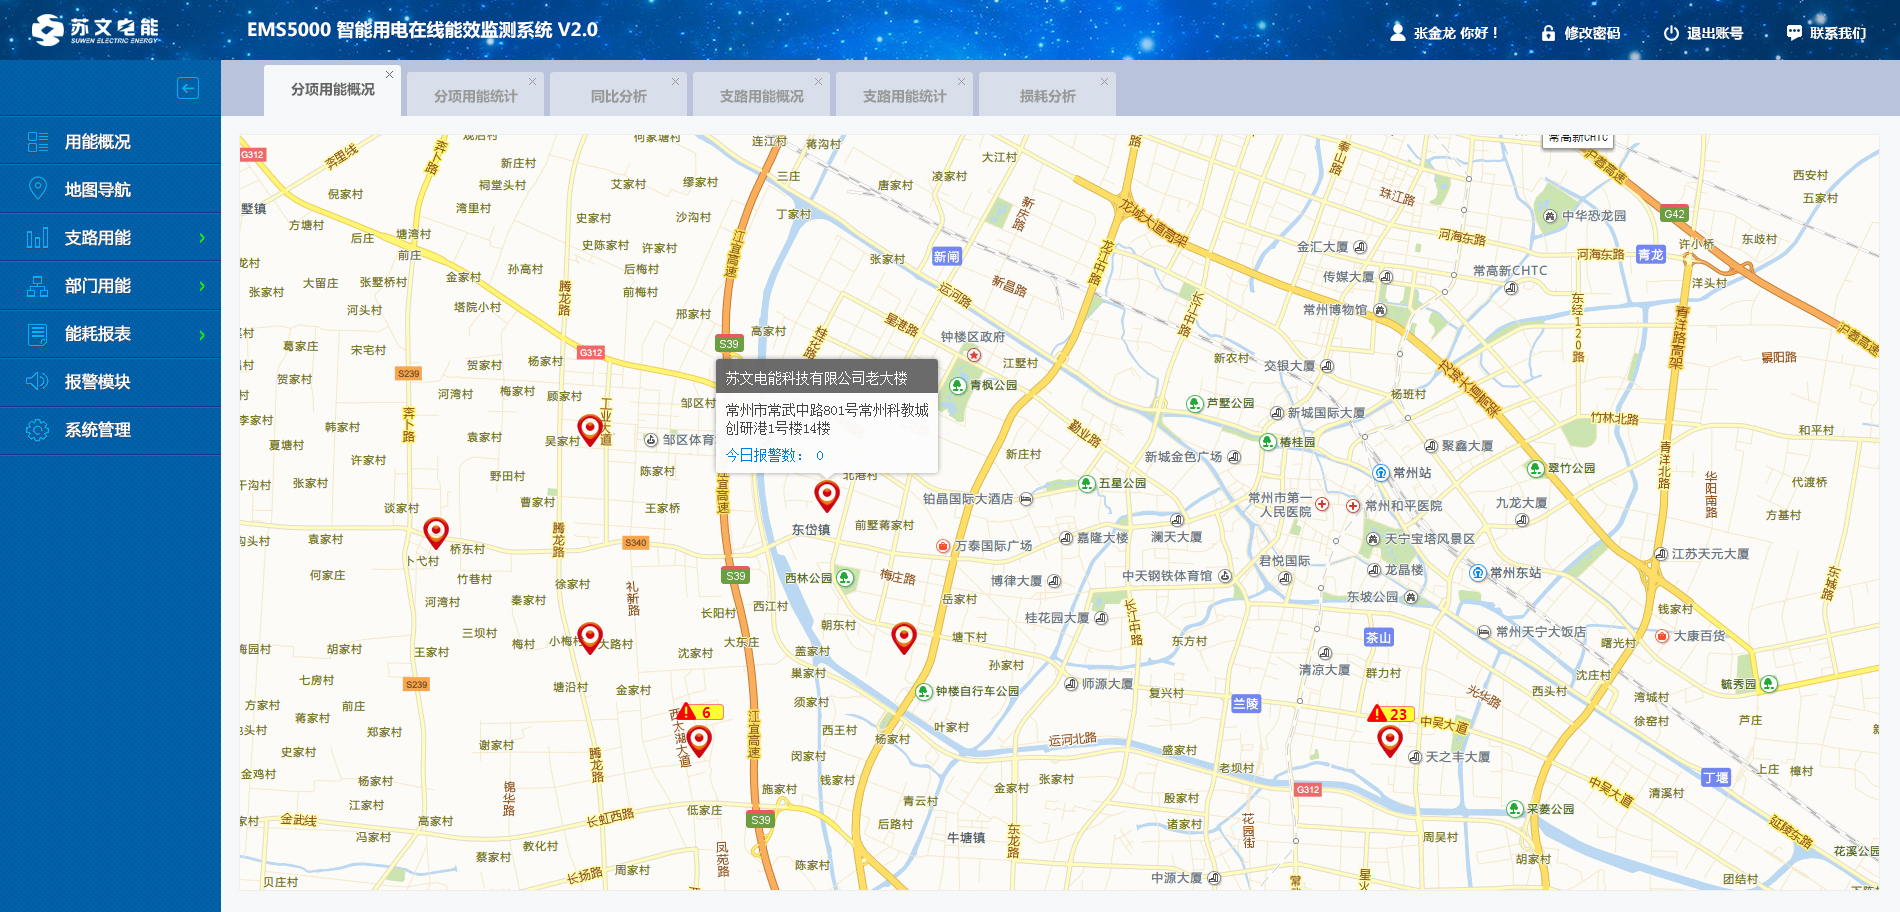 中国和地图导航系统_百度导航和百度地图导航_百度地图导航 百度导航